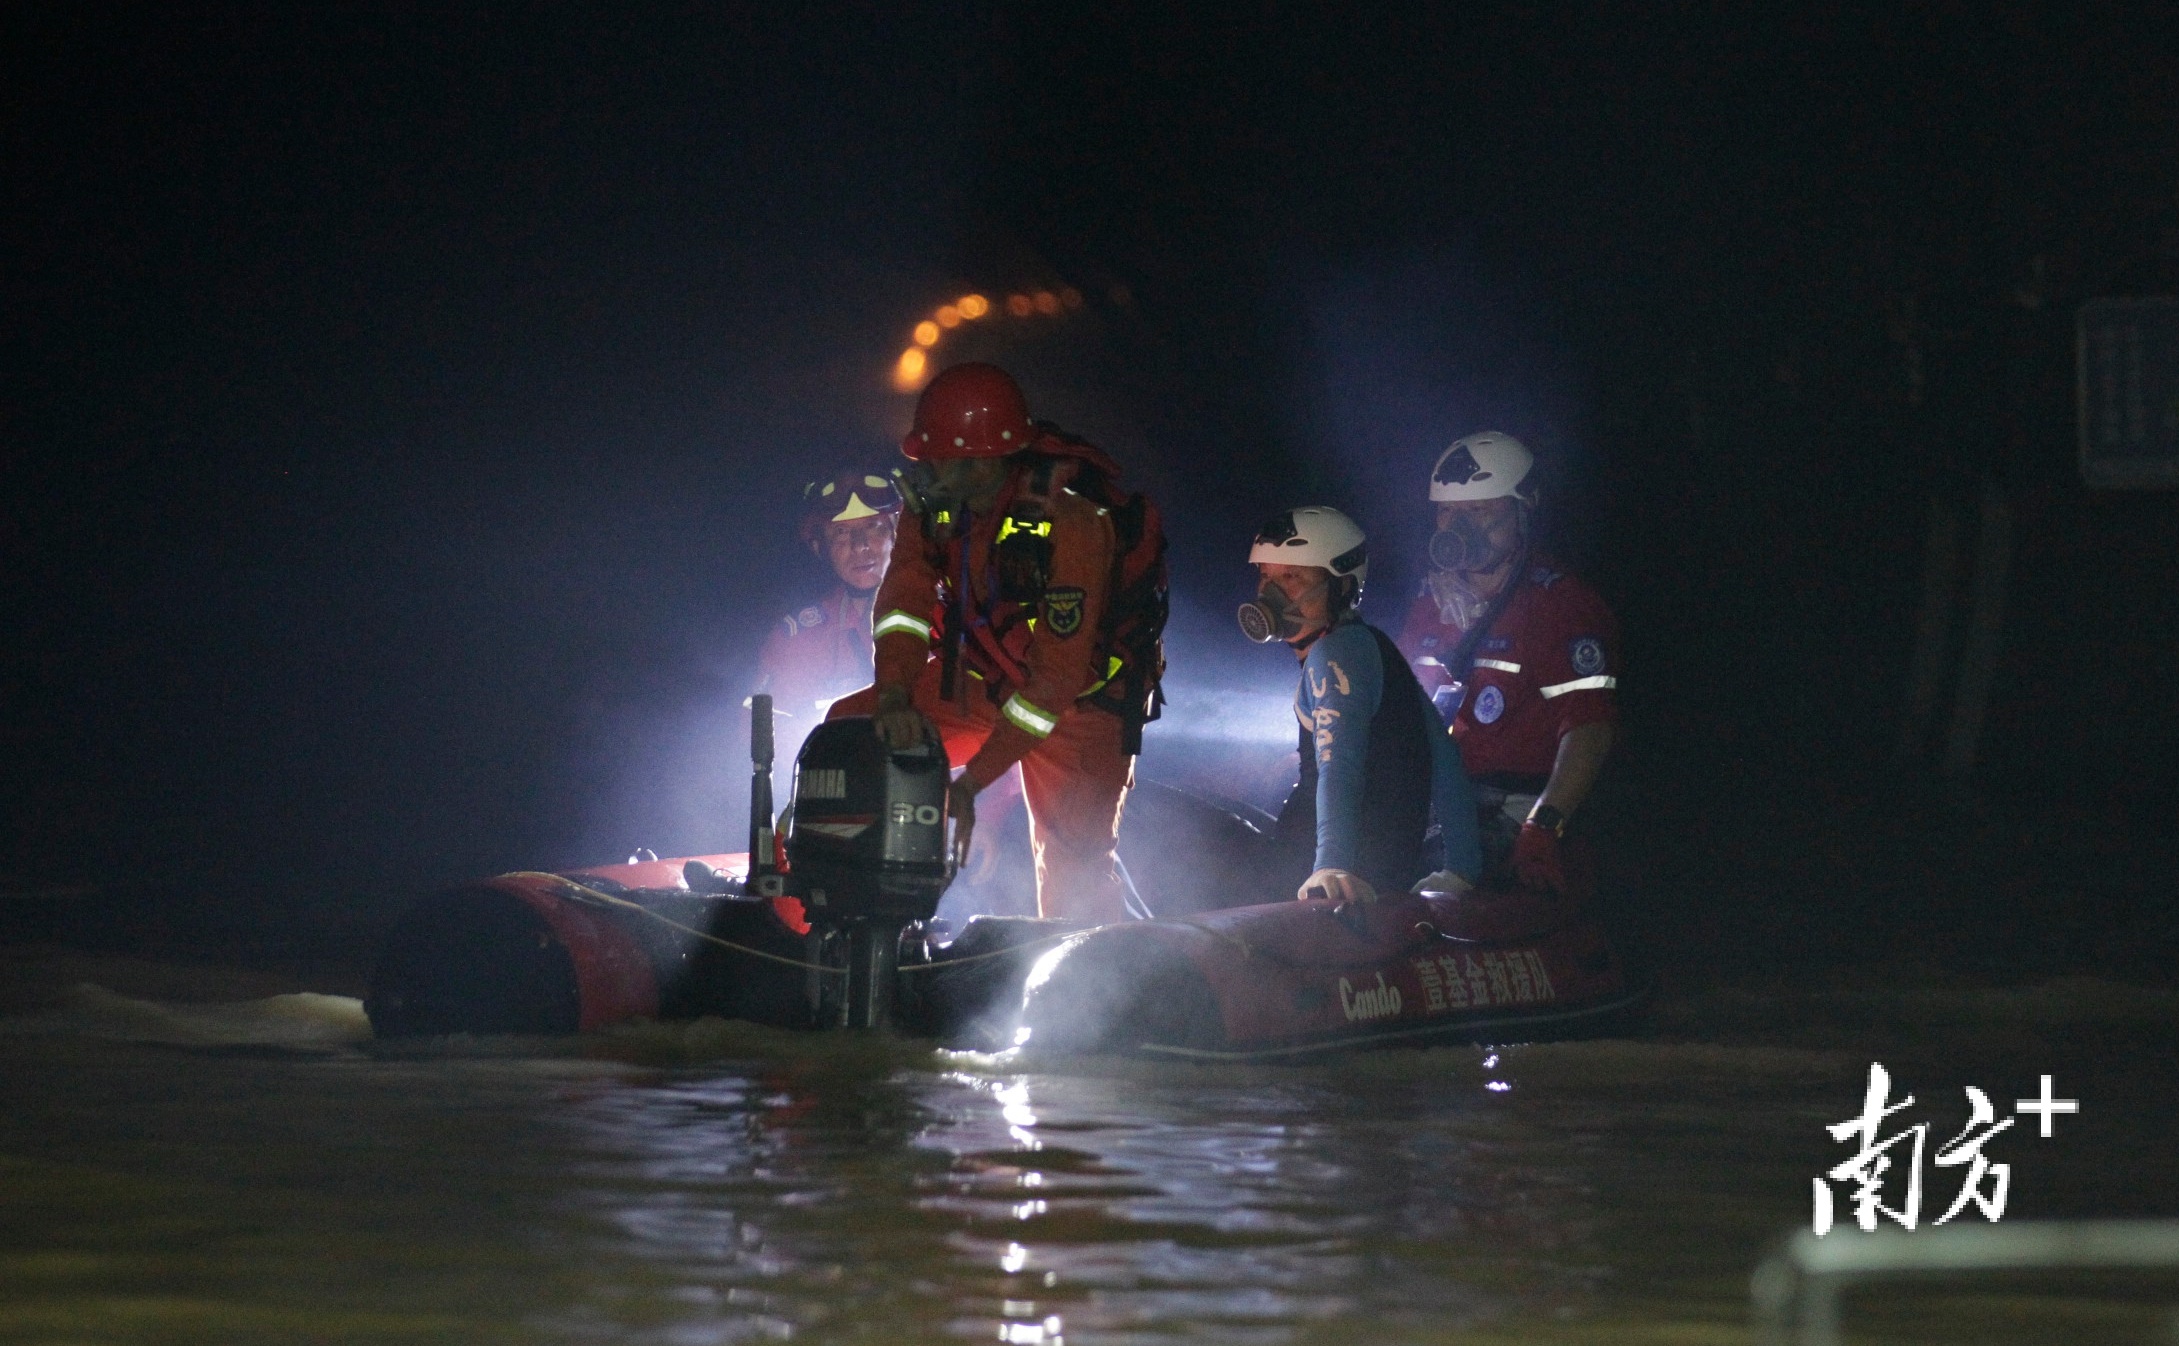 能见度低潜水员靠手摸索搜救珠海石景山隧道透水事故新进展